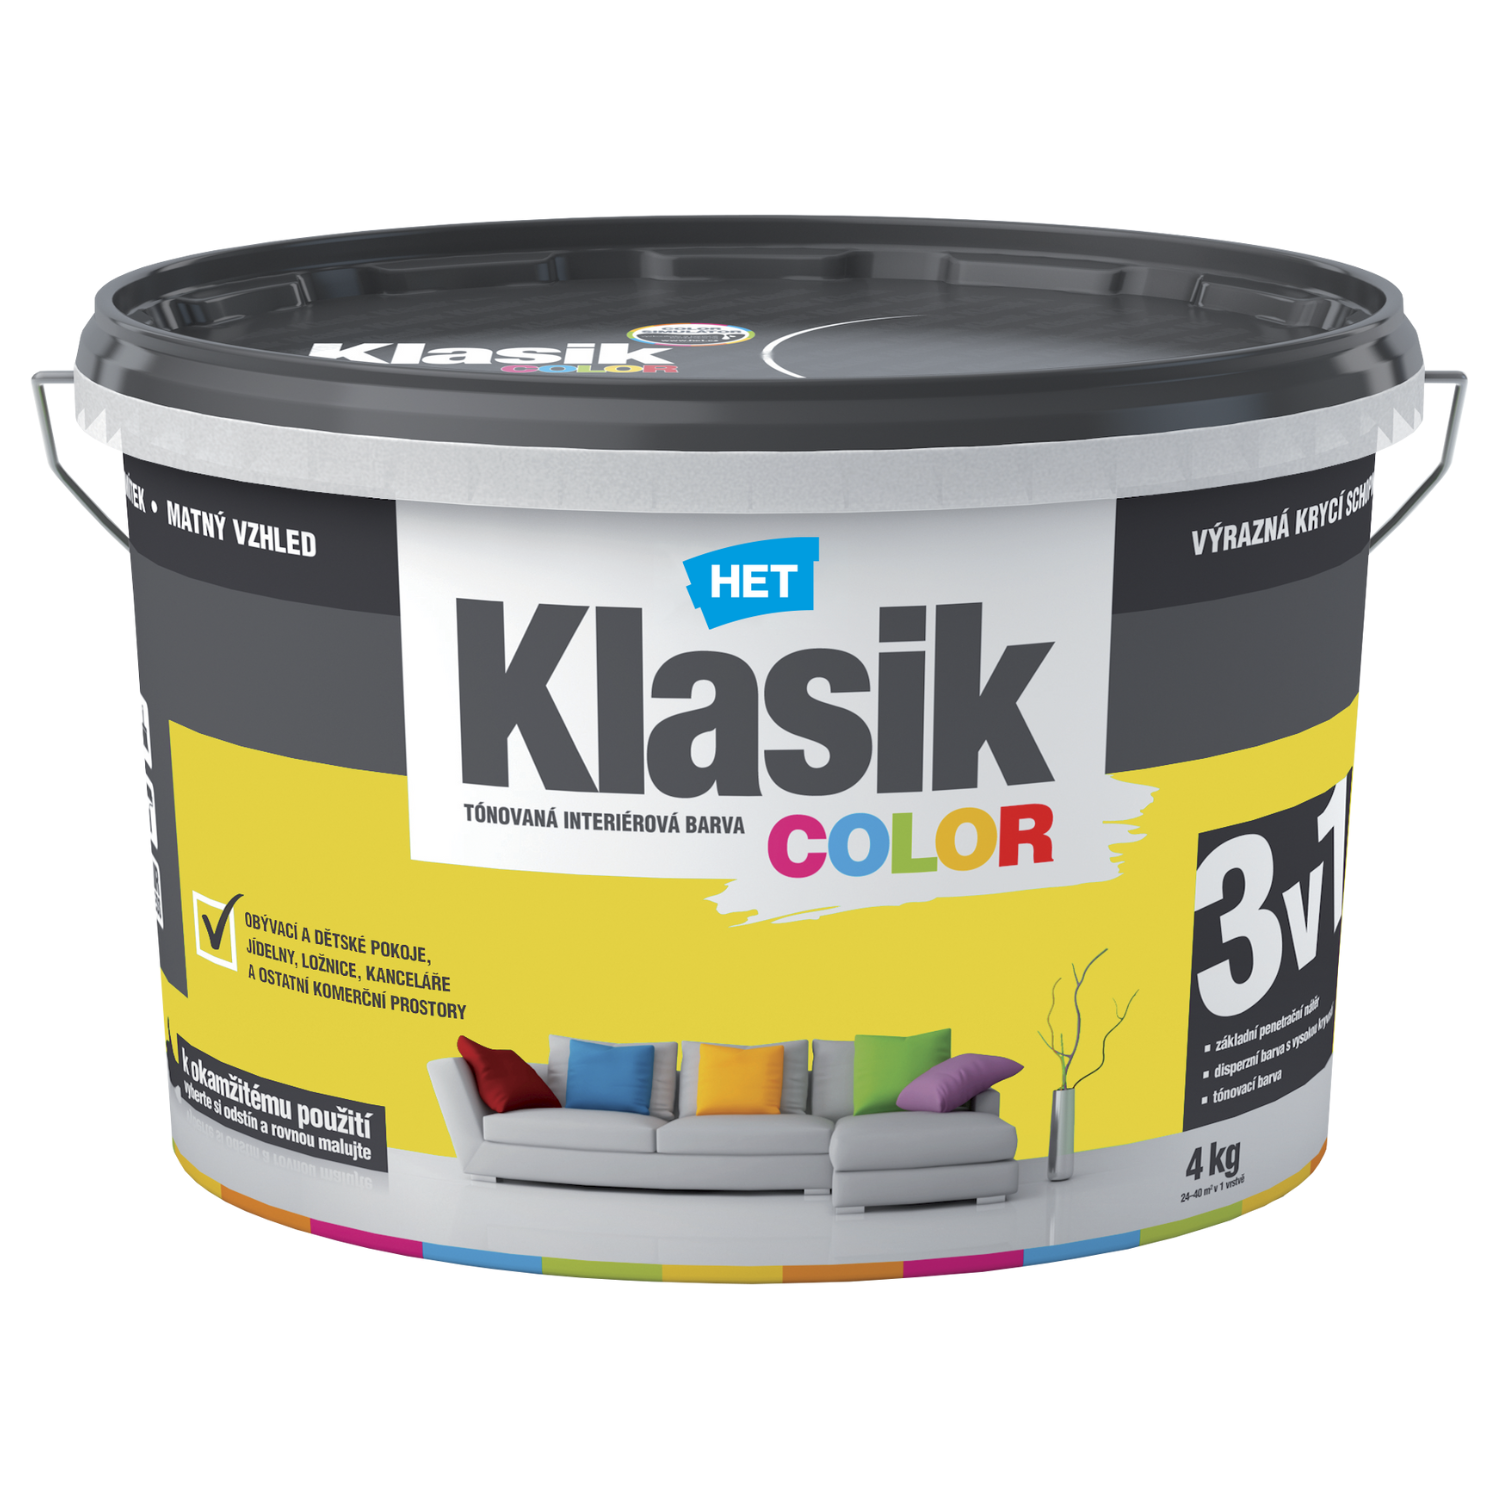 HET Klasik COLOR tónovaná interiérová akrylátová disperzná oteruvzdorná farba 4 kg, KC0618 - žltý citrónový